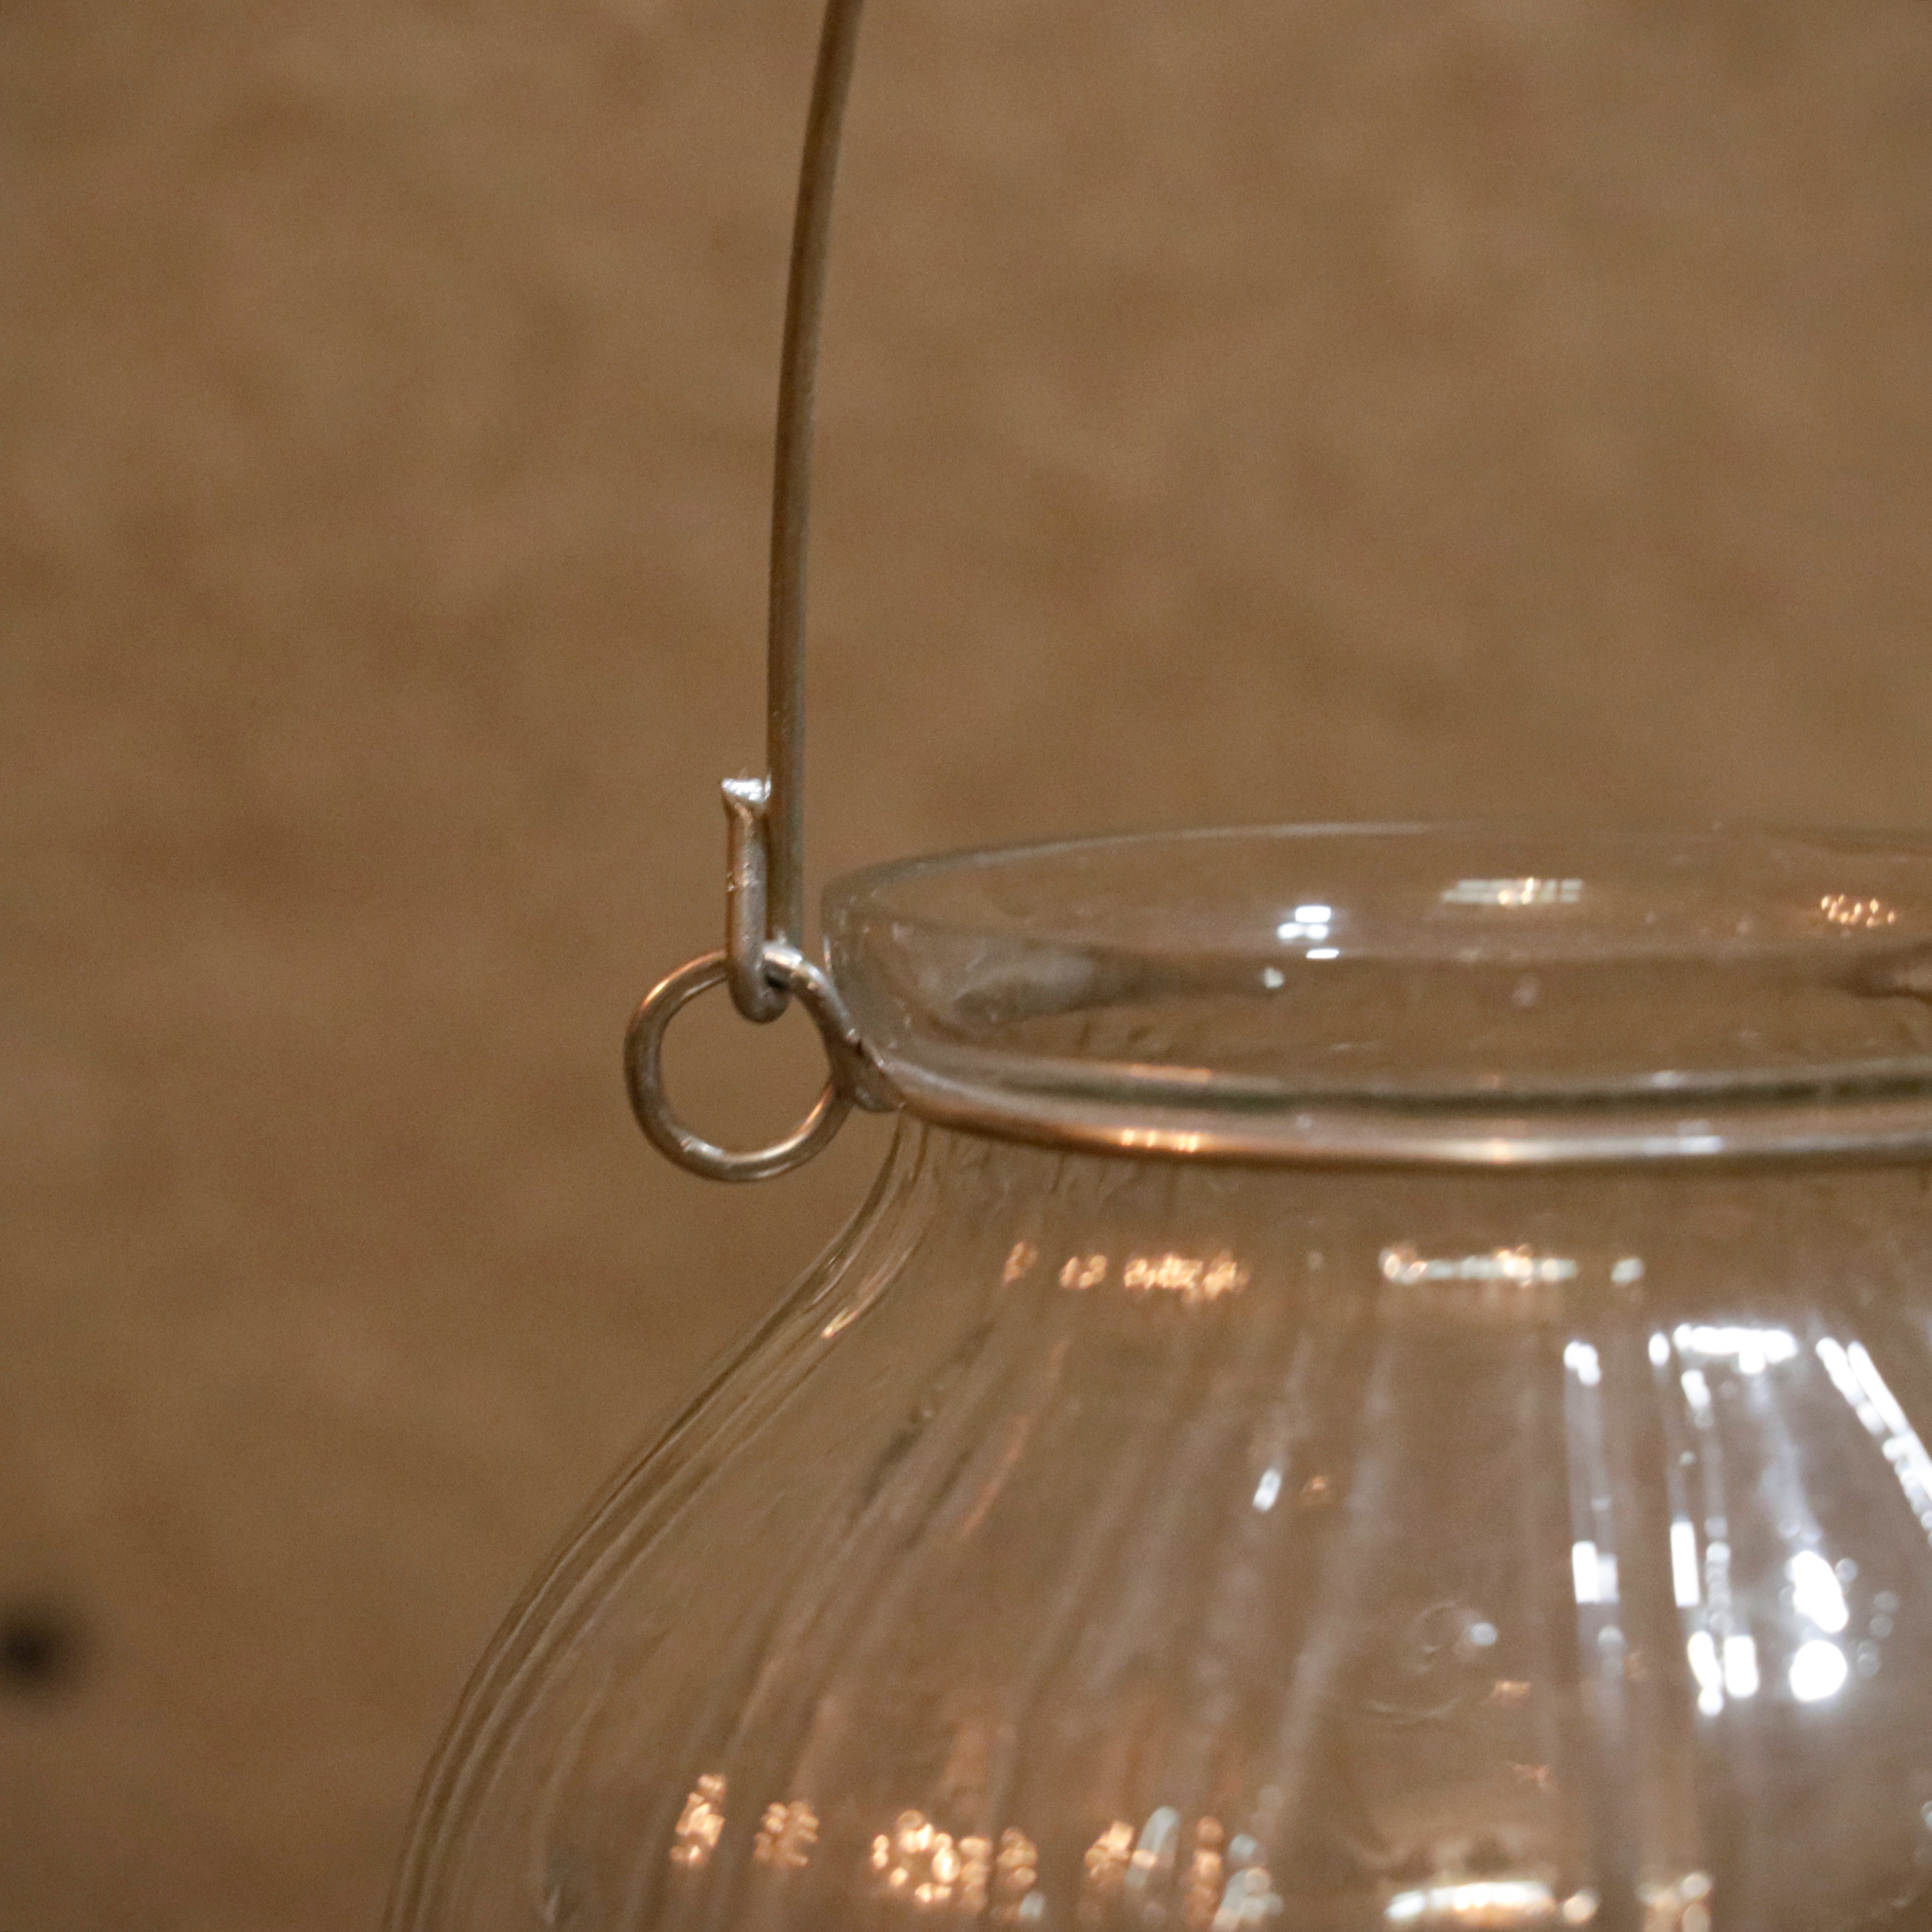 Old Heritage Hanging Transparent Jar Outdoor Candle Holder Candle Holder